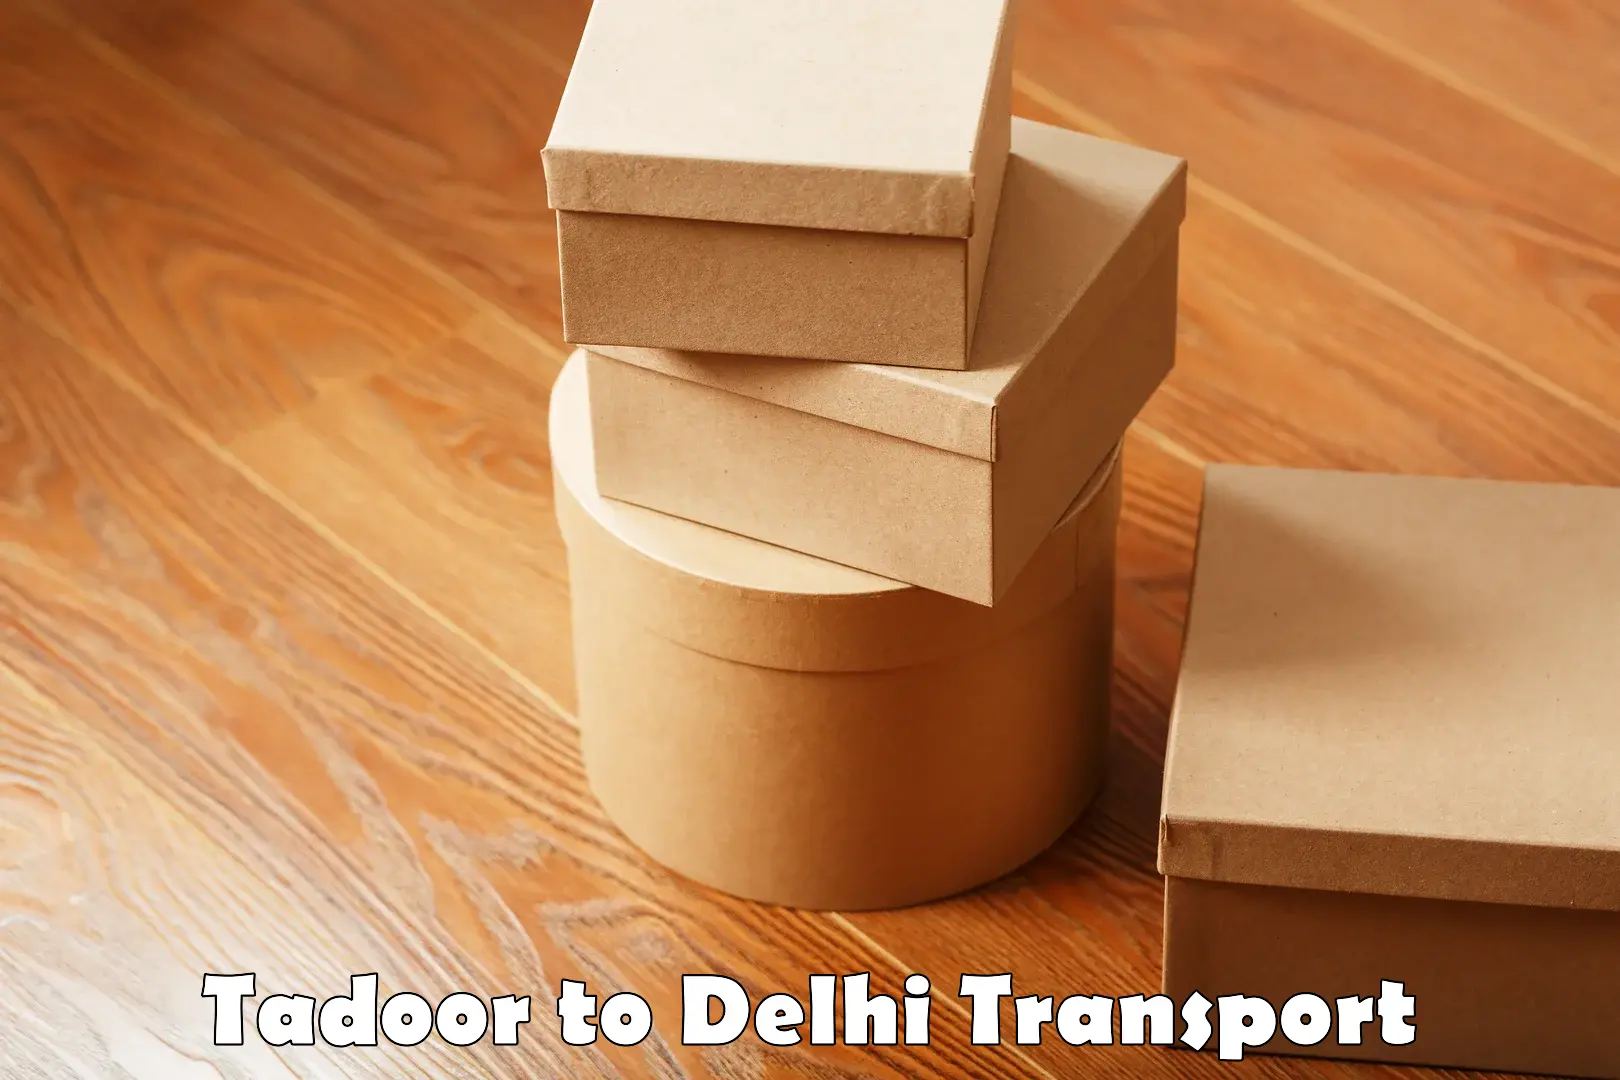 International cargo transportation services Tadoor to NIT Delhi